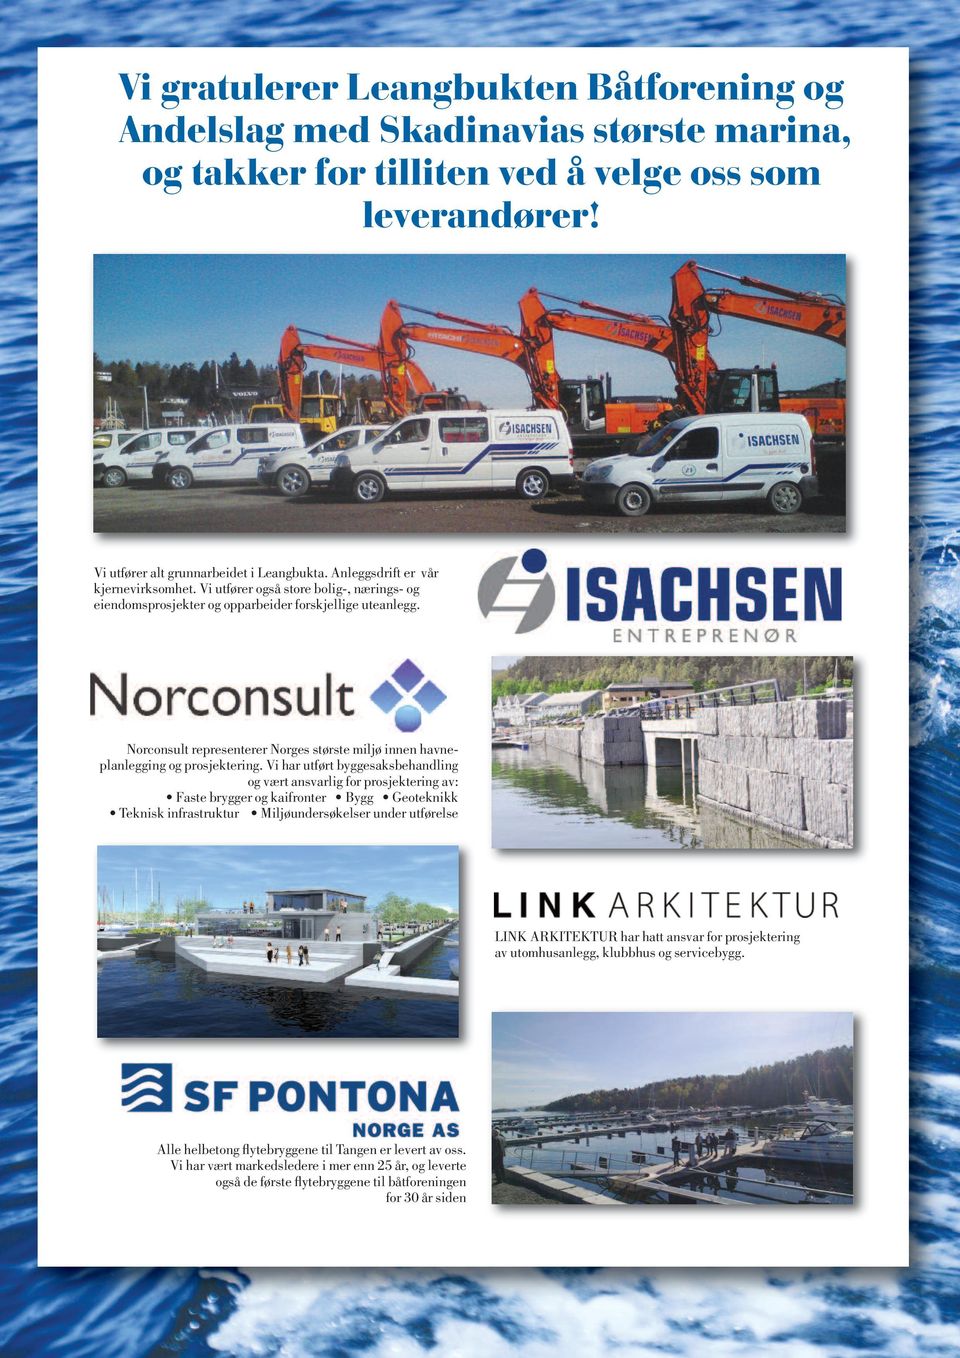 Norconsult representerer Norges største miljø innen havneplanlegging og prosjektering.